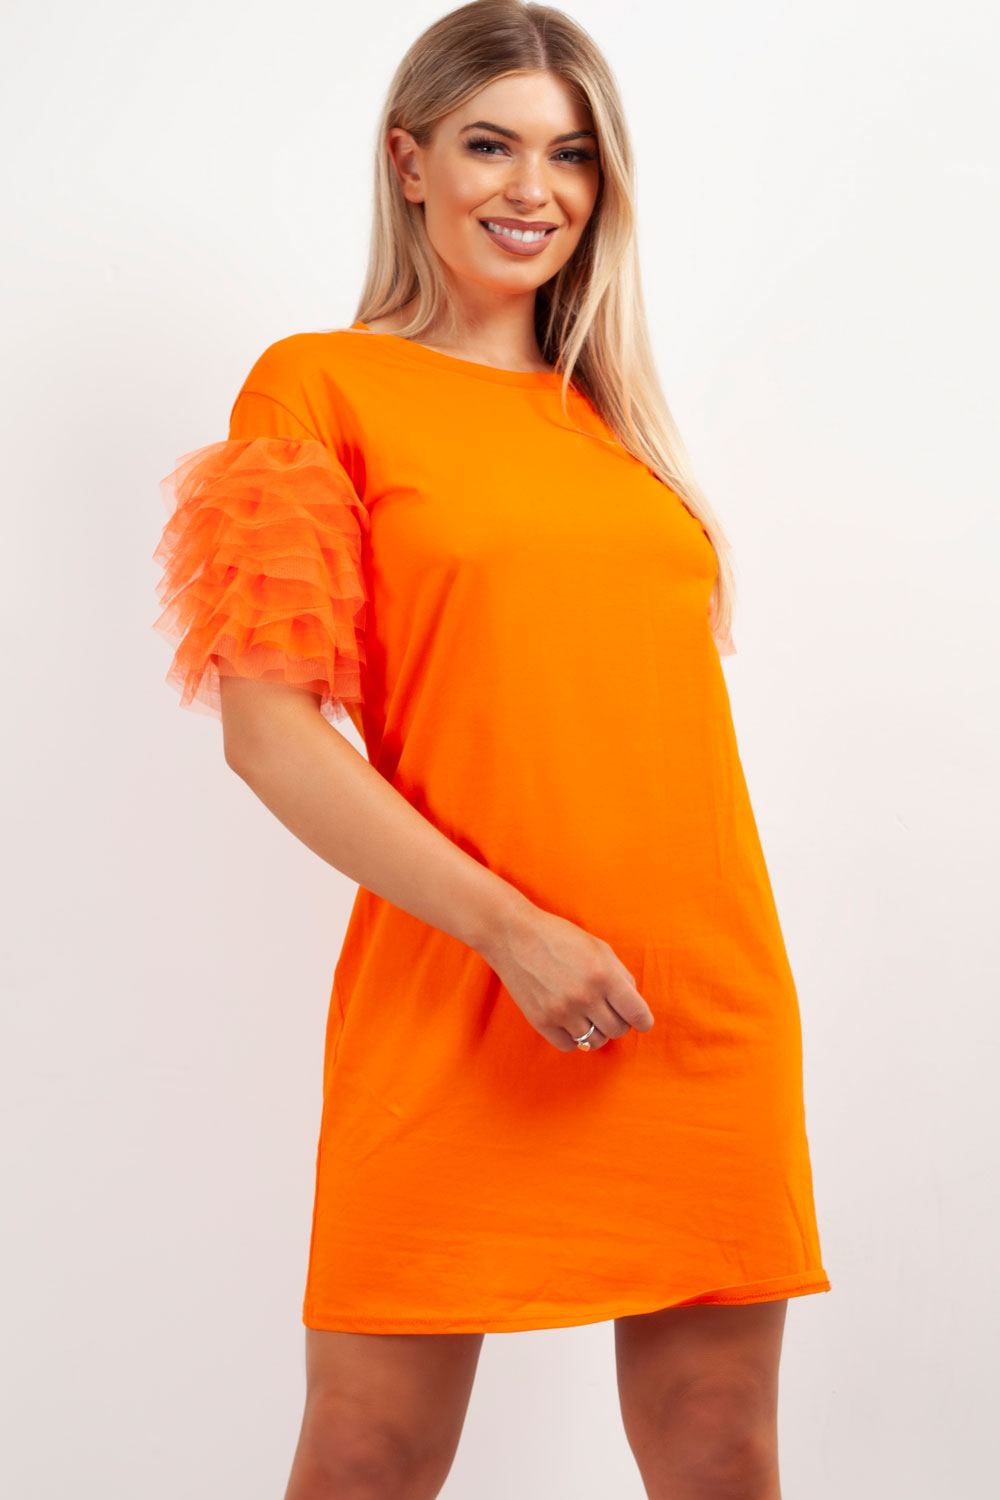 Neon Orange T Shirt Dress Store, 53 ...